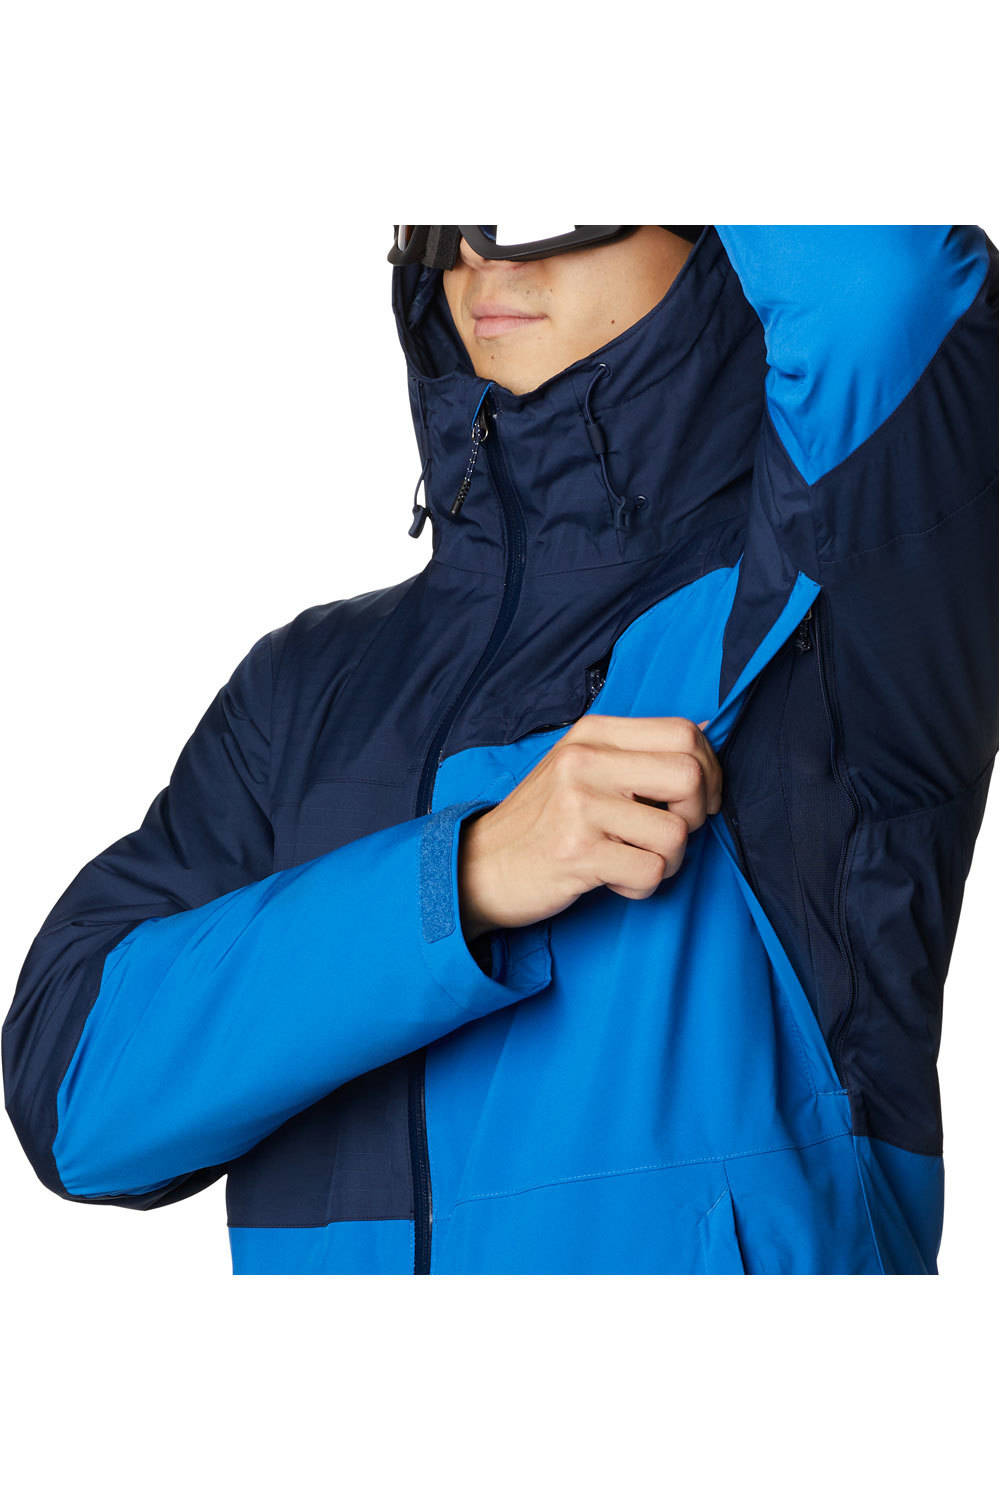 Columbia chaqueta esquí hombre ICEBERG POINT BRIGHT INDIGO 03